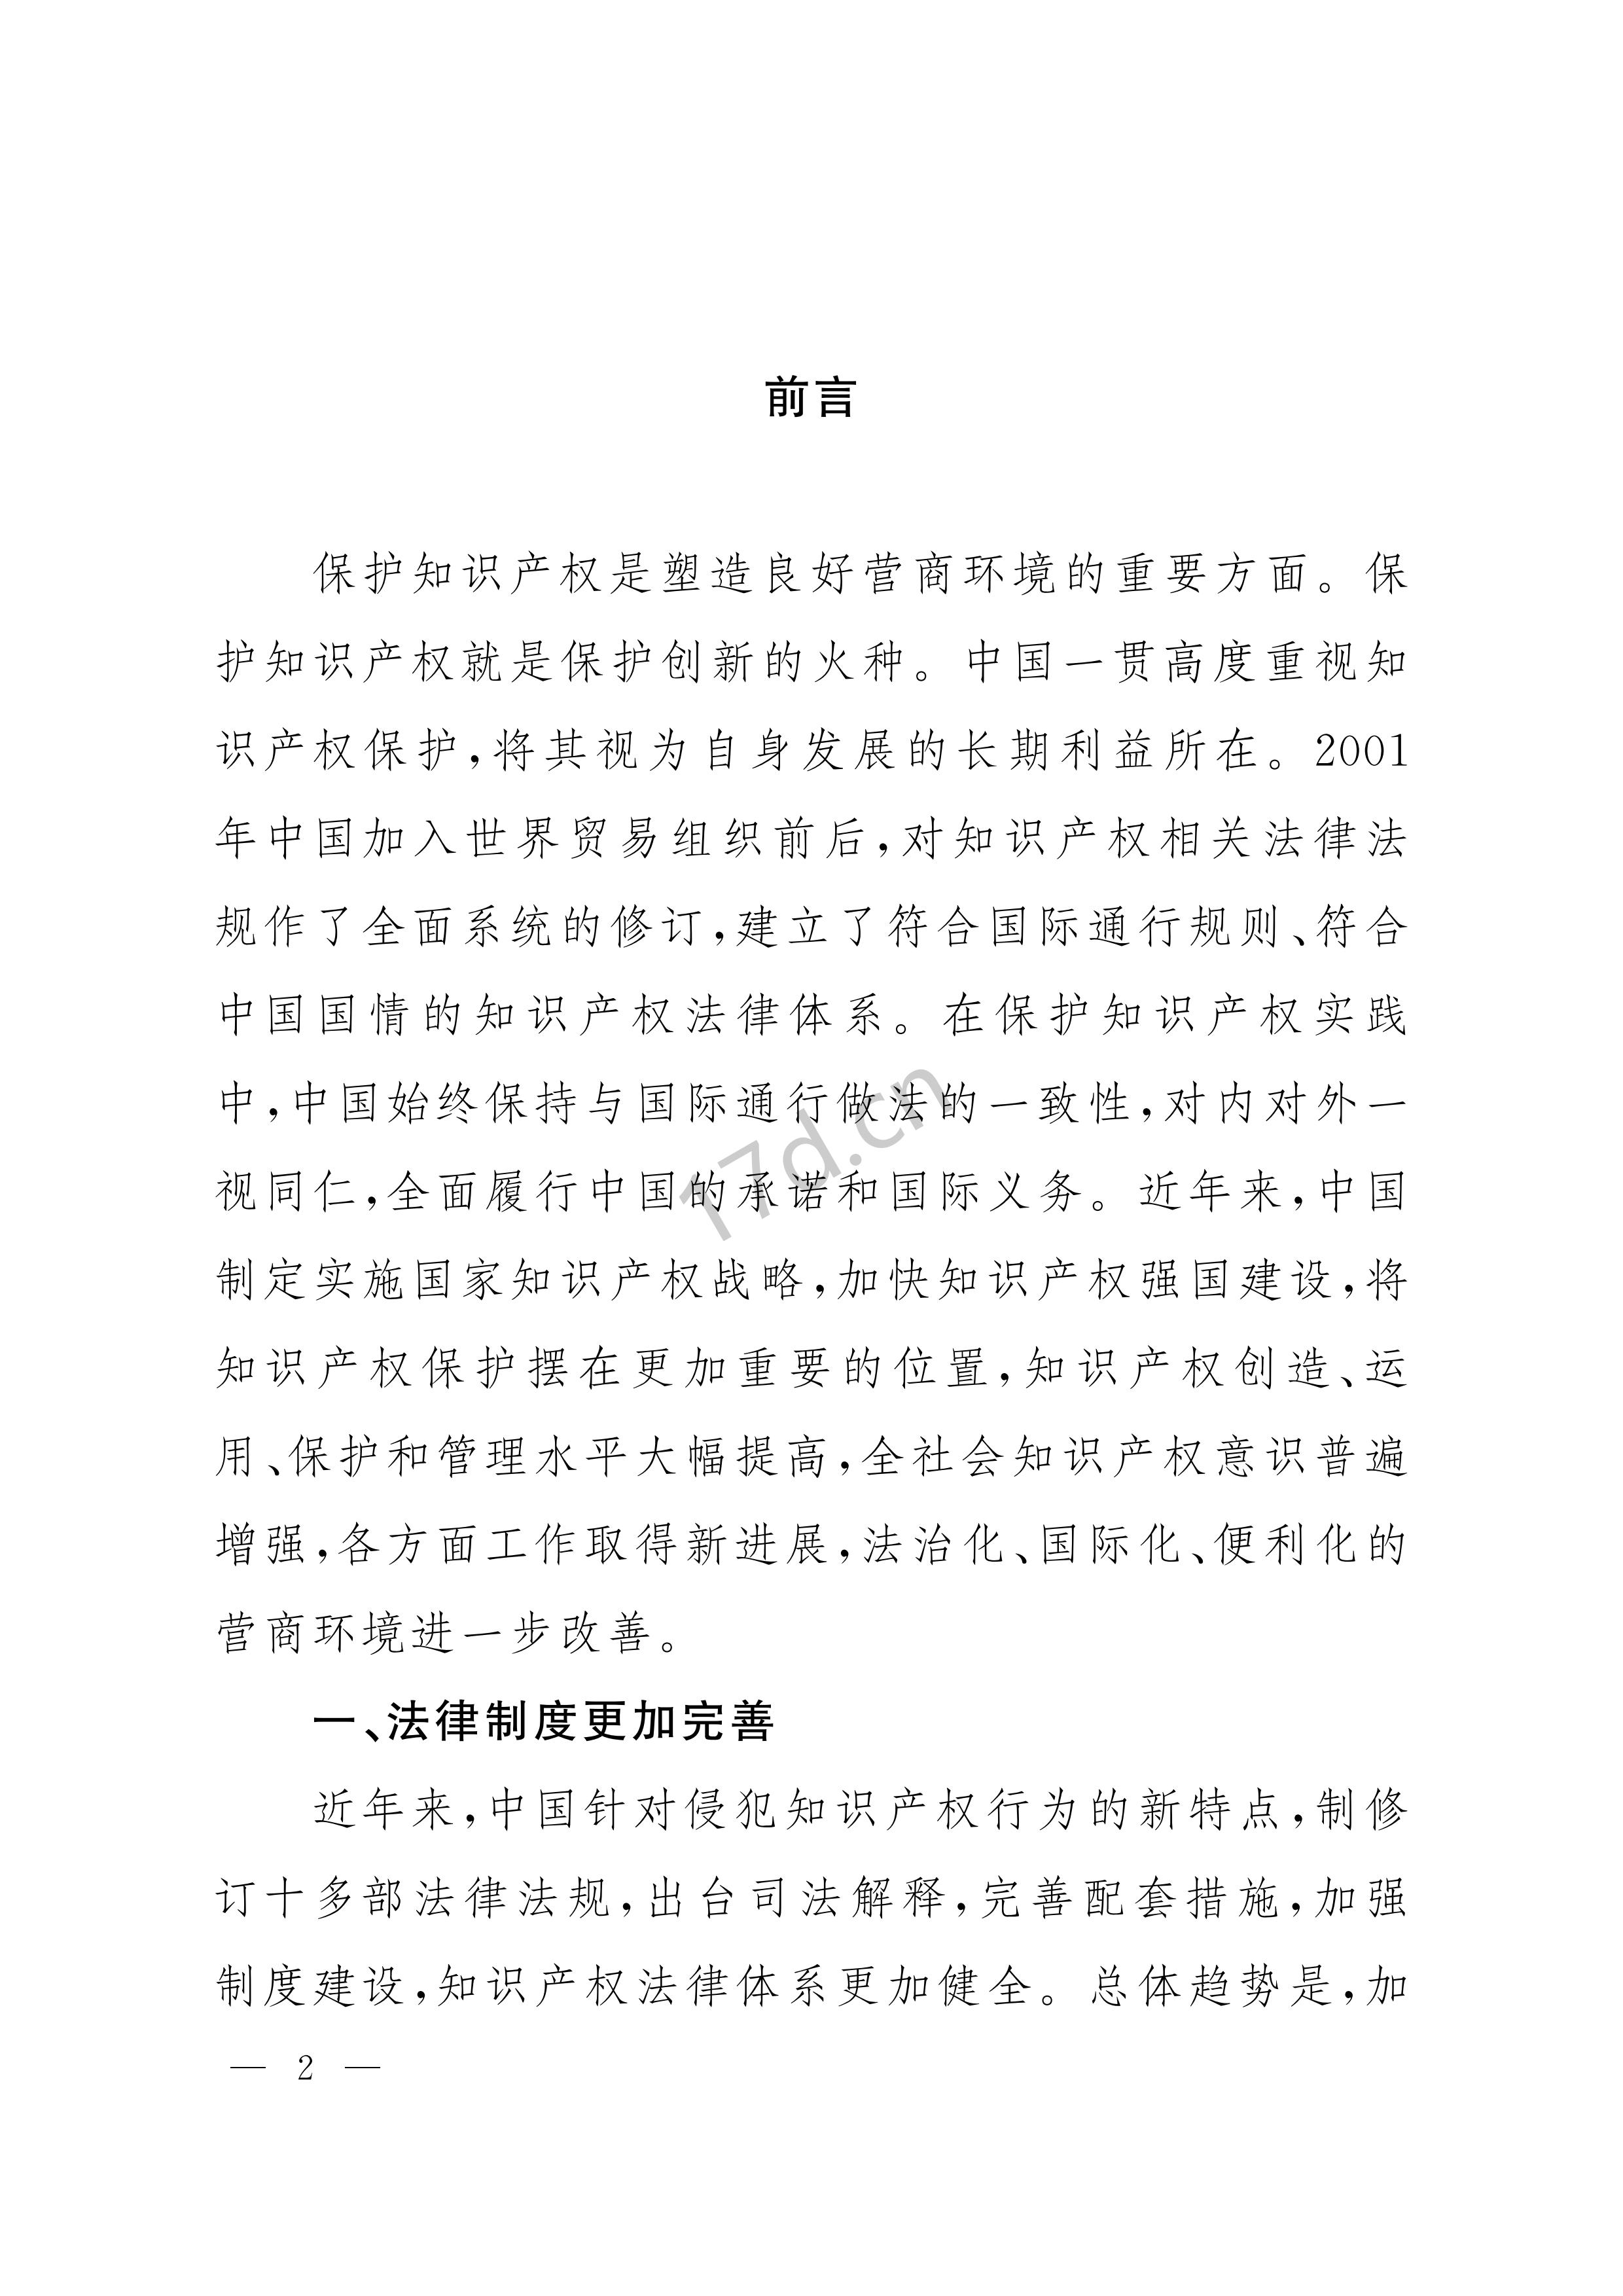 中国知识产权保护与营商环境新进展报告_01.jpg